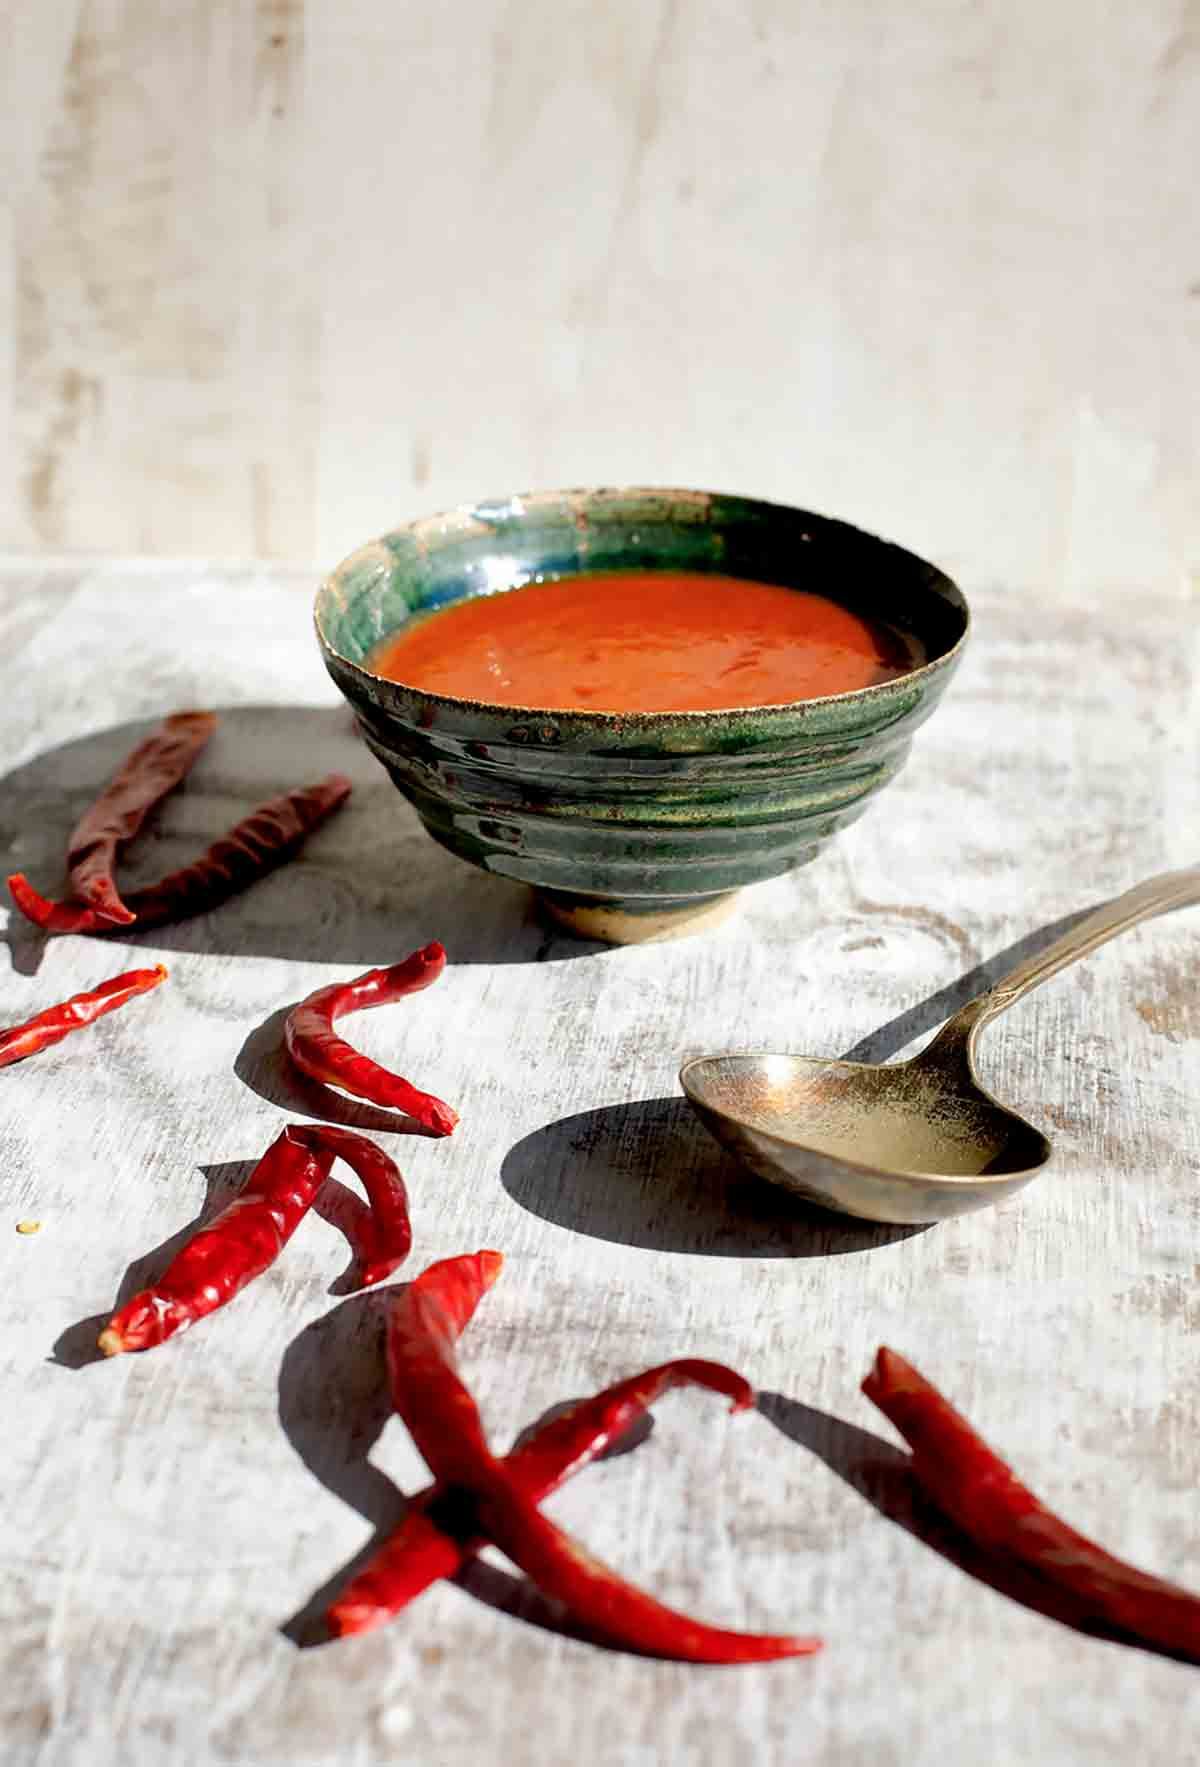 Portuguese Piri-Piri Hot Sauce in a bowl.